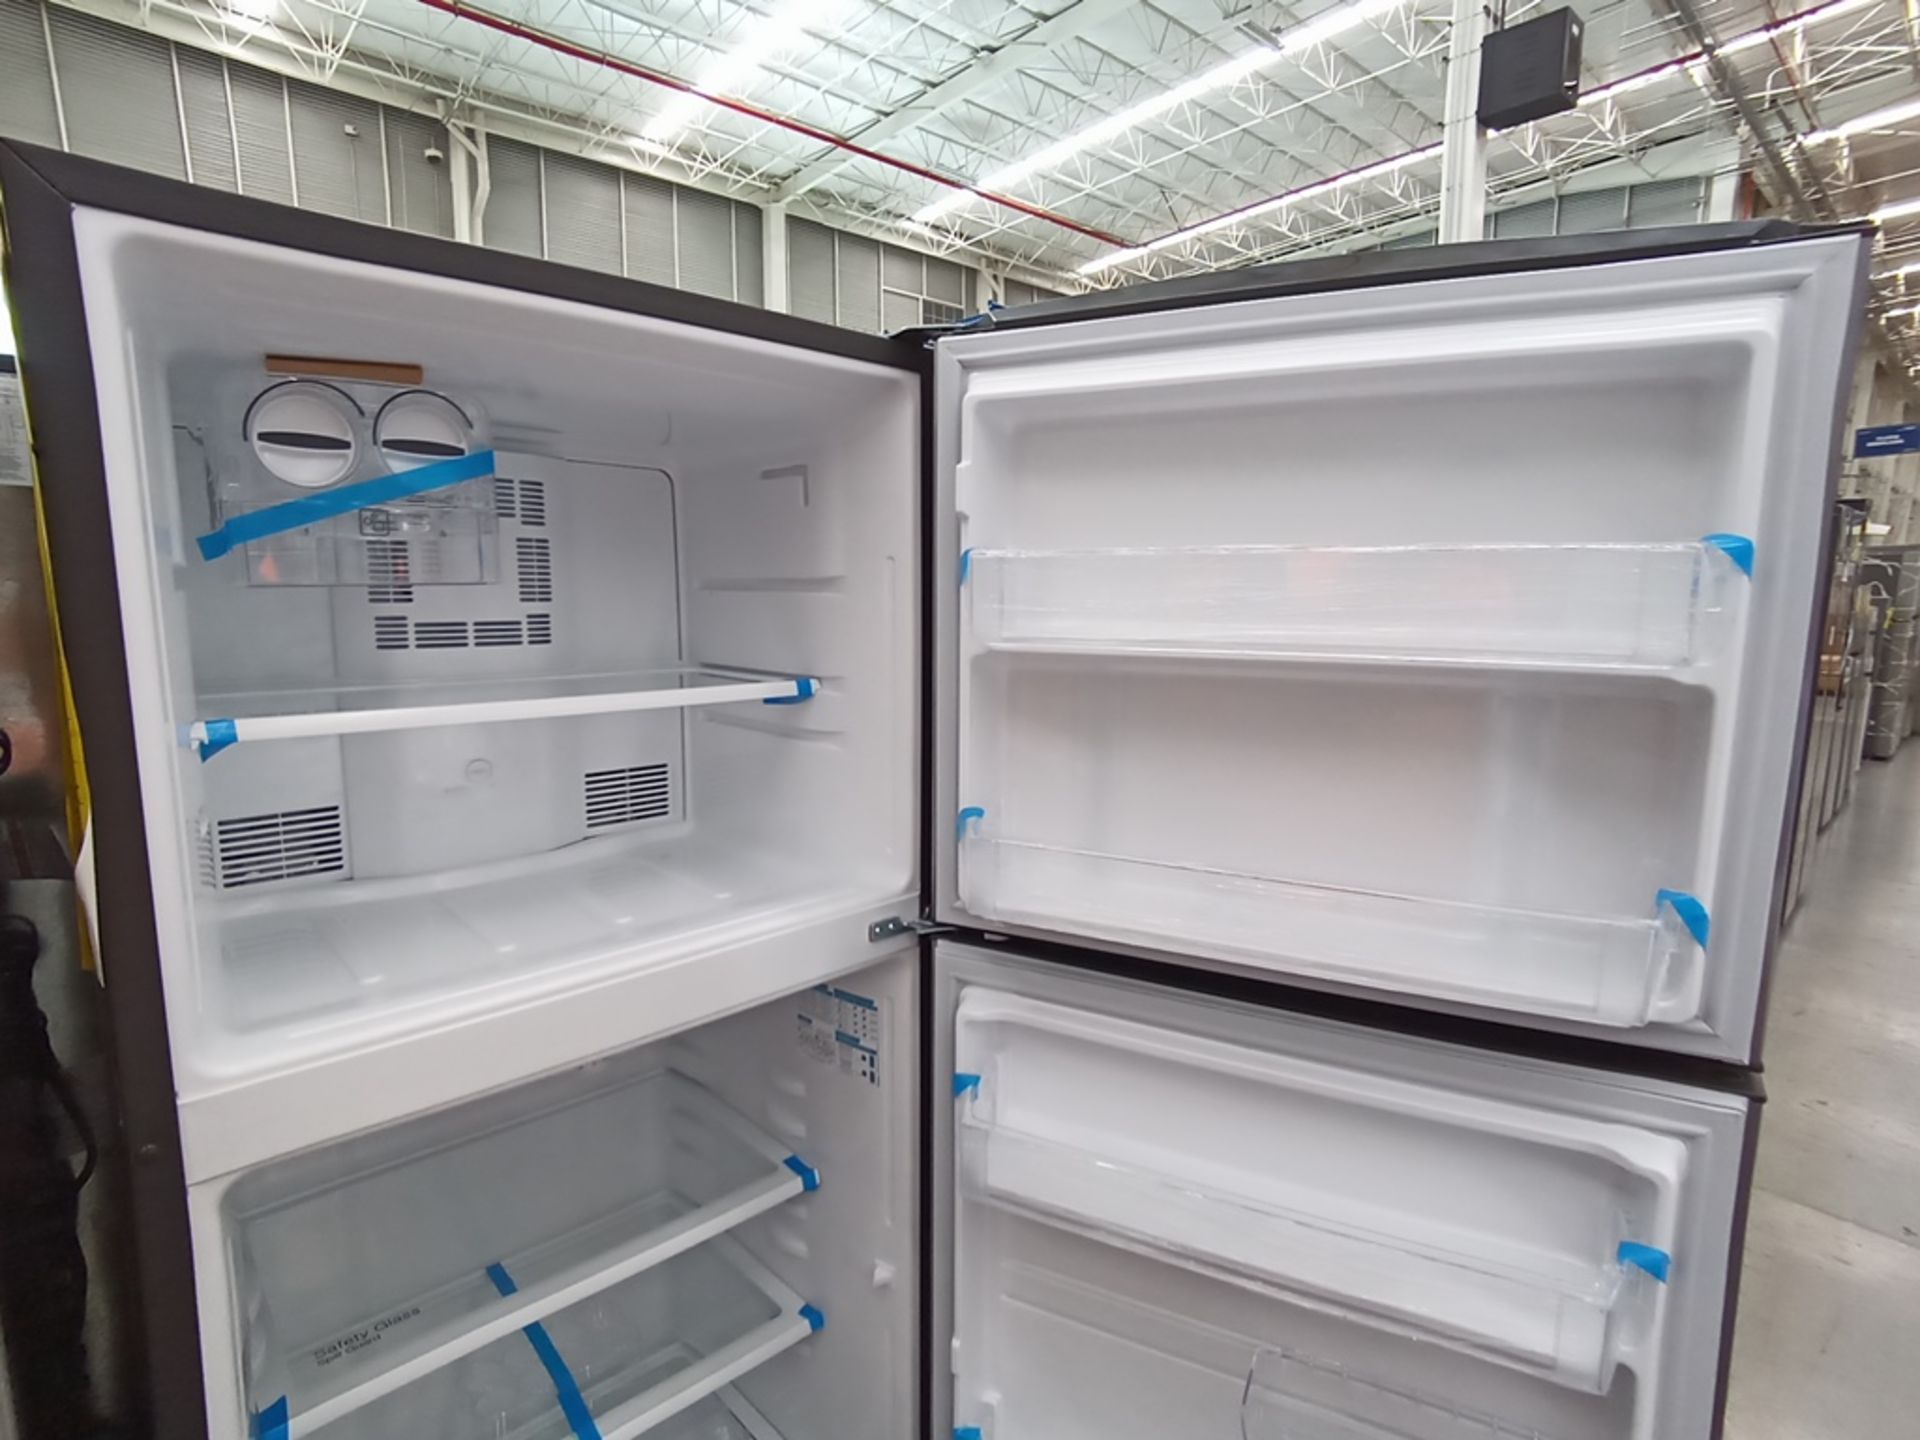 Lote de 2 refrigeradores contiene: 1 Refrigerador con dispensador de agua, Marca Winia, Modelo DFR- - Image 12 of 15